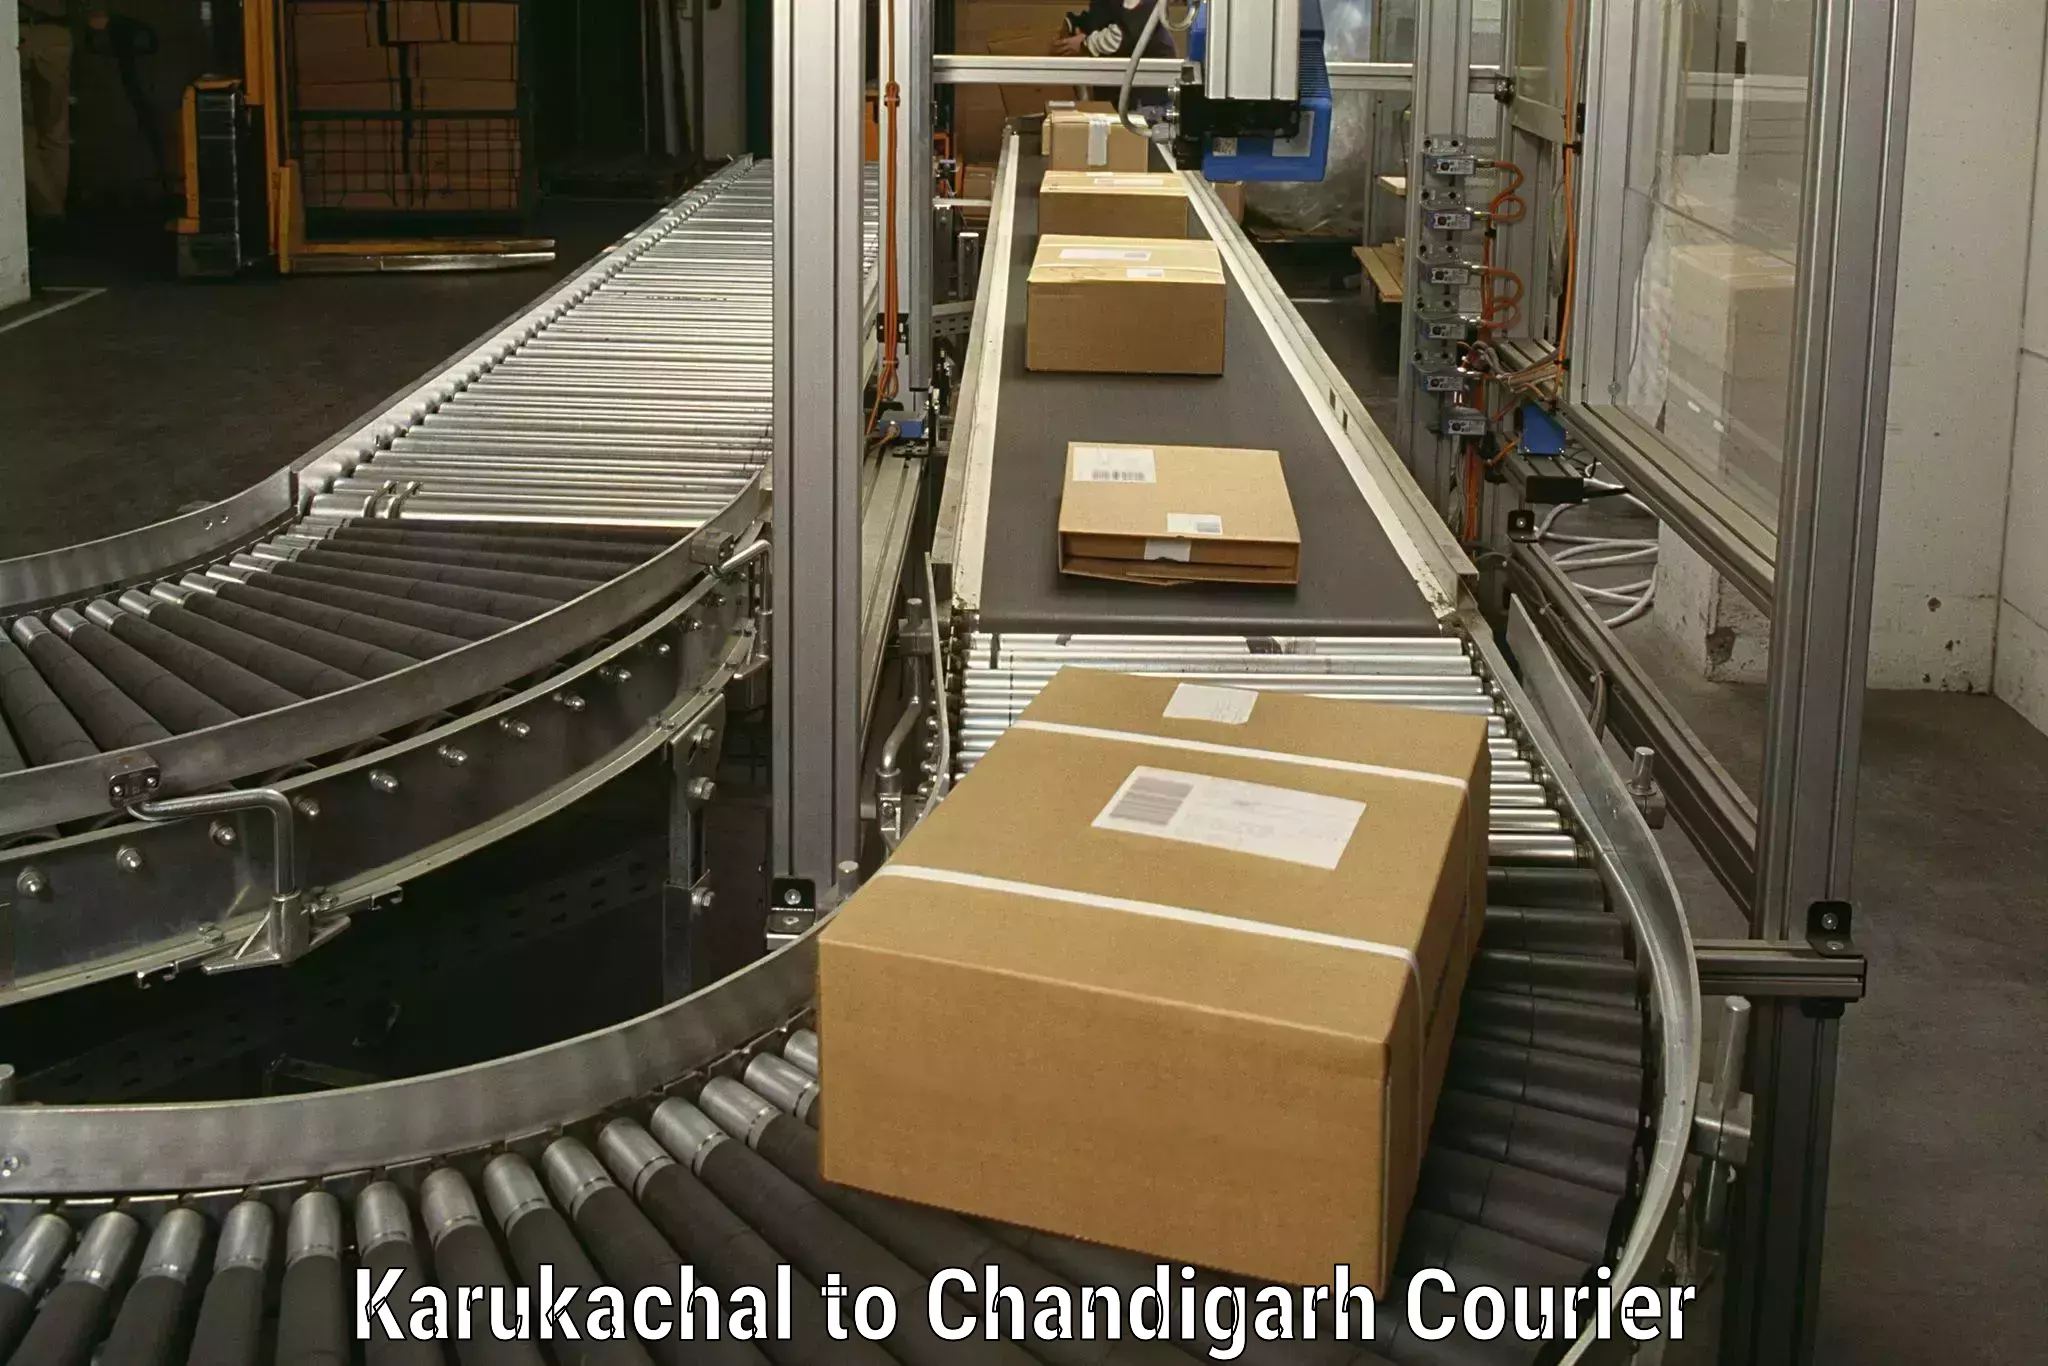 Efficient relocation services in Karukachal to Chandigarh